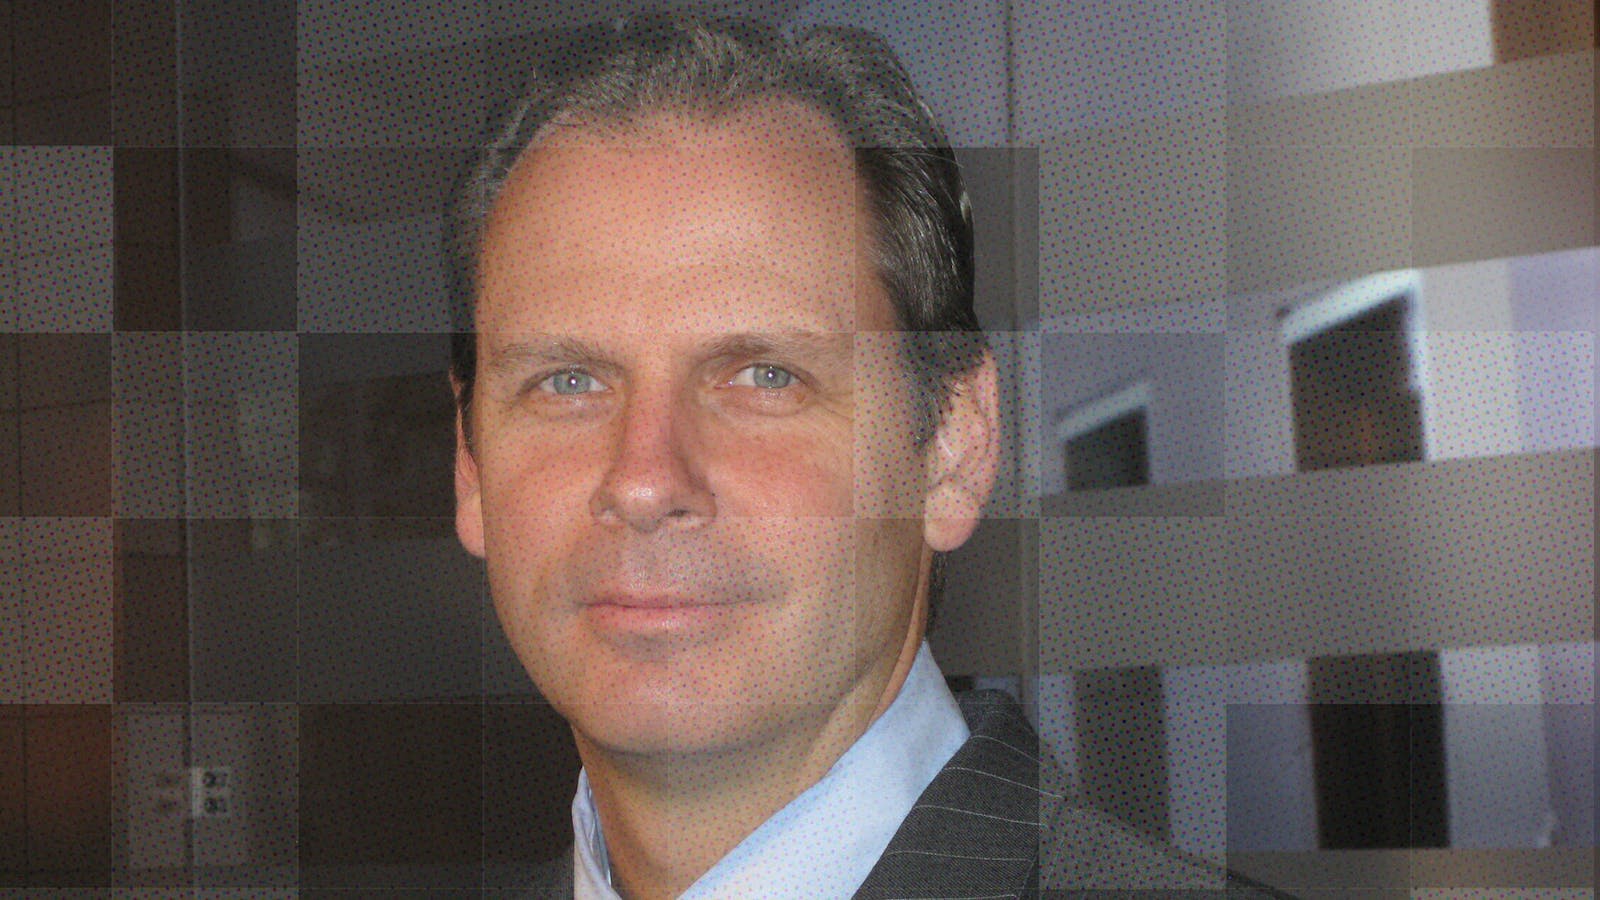 Martin Schroeter. Photo courtesy of IBM